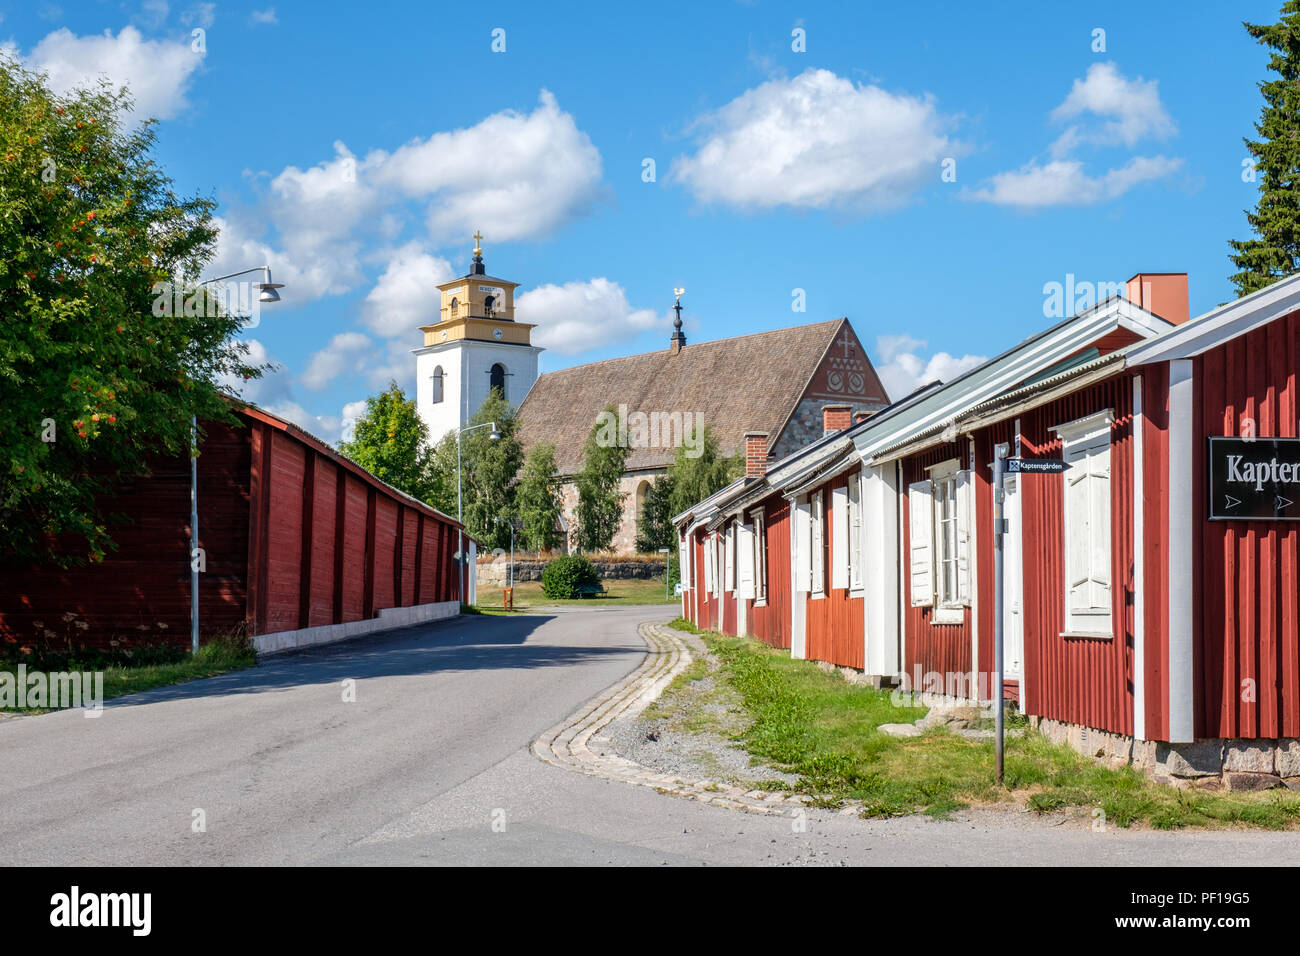 Chiesa di Gammelstad città al di fuori di Luleå in Svezia settentrionale. La chiesa risale al medioevo ed è un sito Patrimonio Mondiale dell'UNESCO. Foto Stock